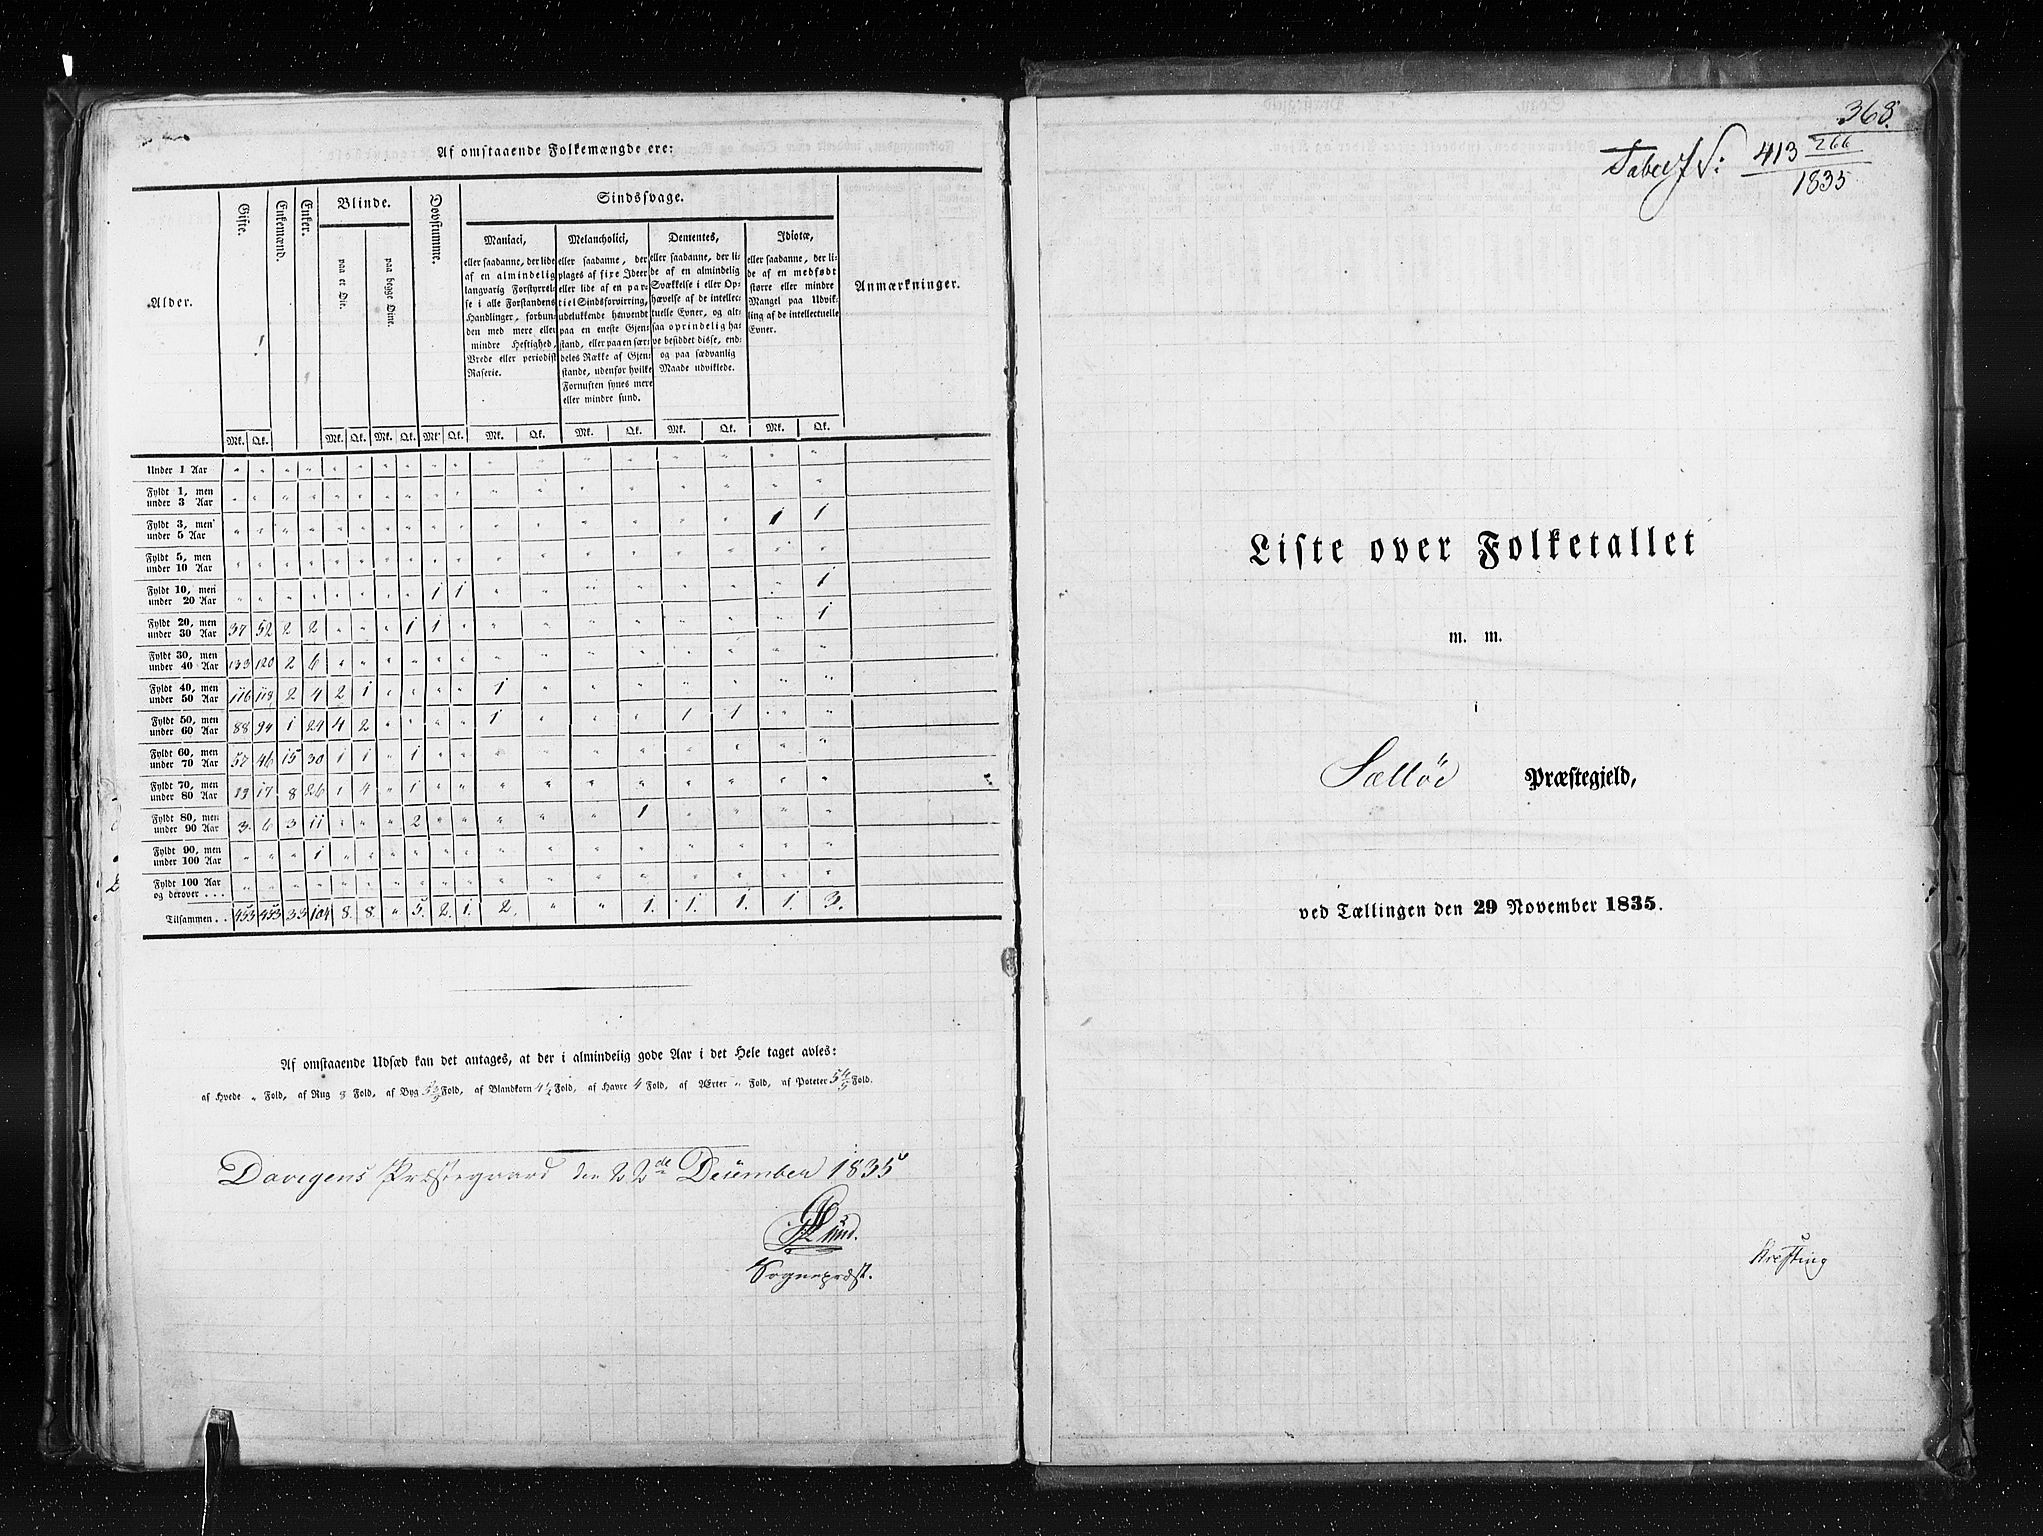 RA, Census 1835, vol. 7: Søndre Bergenhus amt og Nordre Bergenhus amt, 1835, p. 368